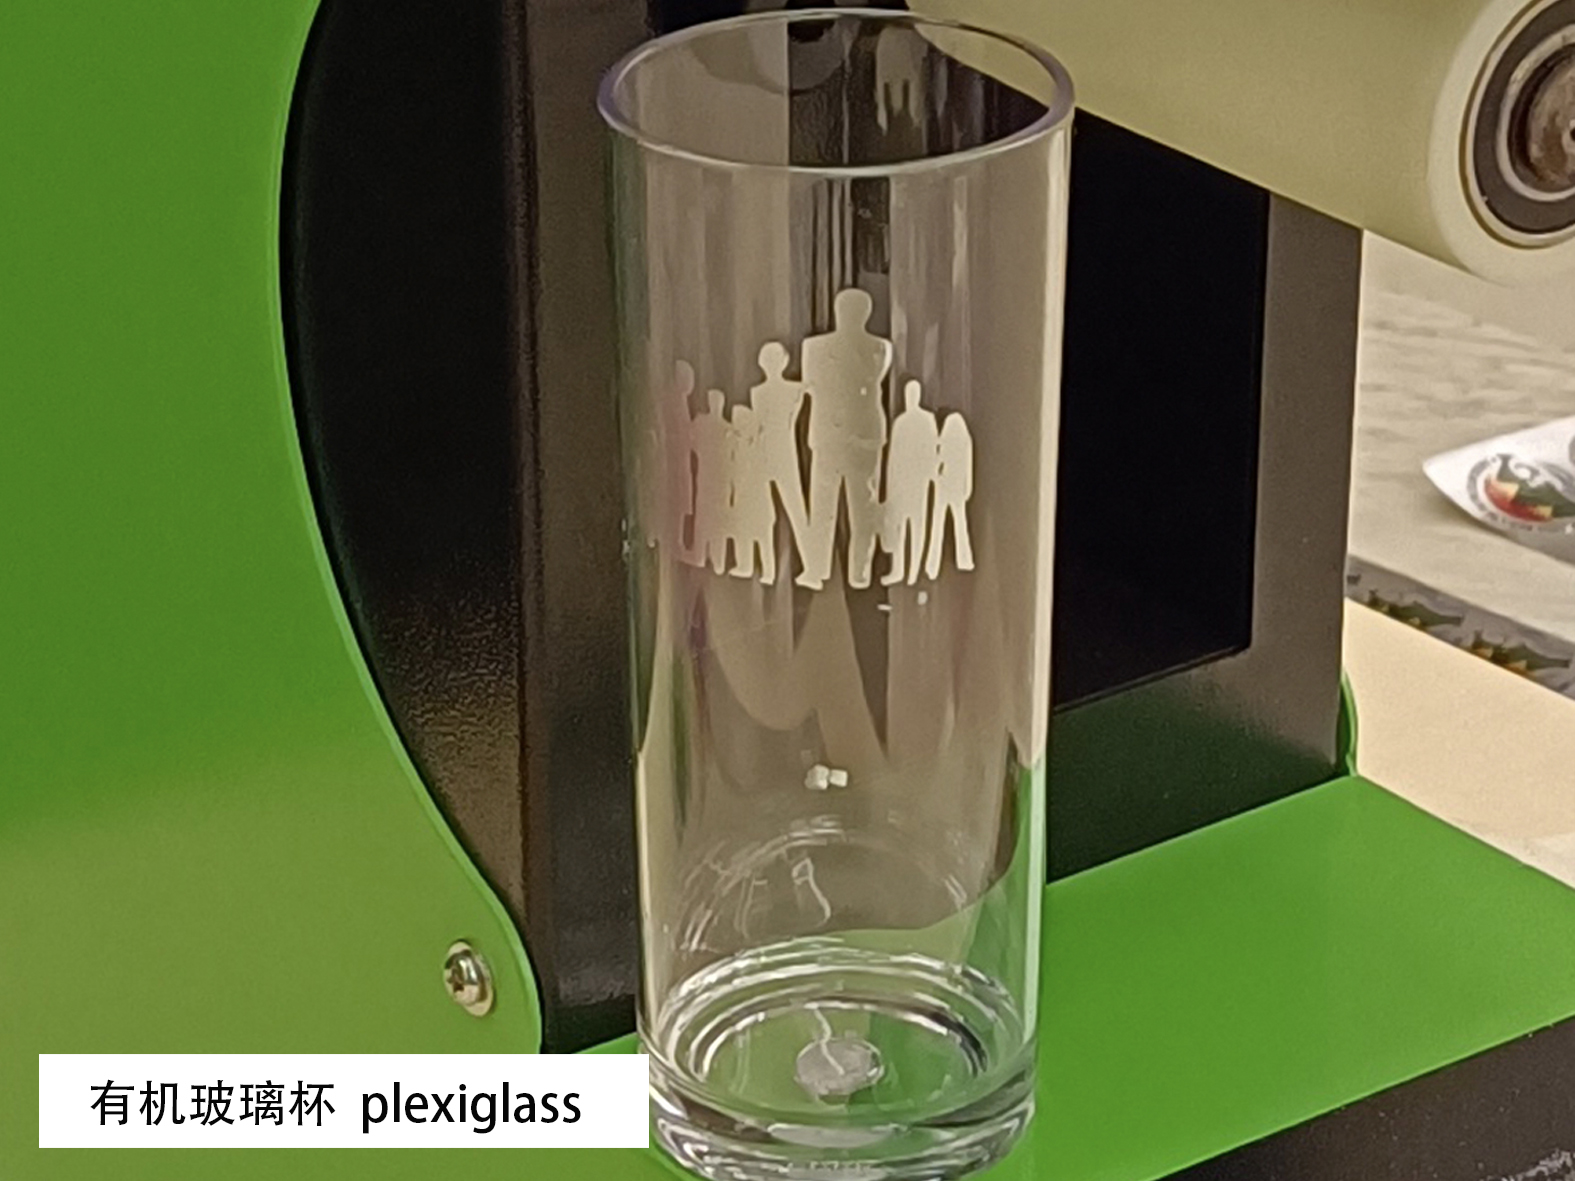 用银色热转印贴花箔定制有机玻璃杯的标签、徽标等， Metallic heat transfer decal foil for cup